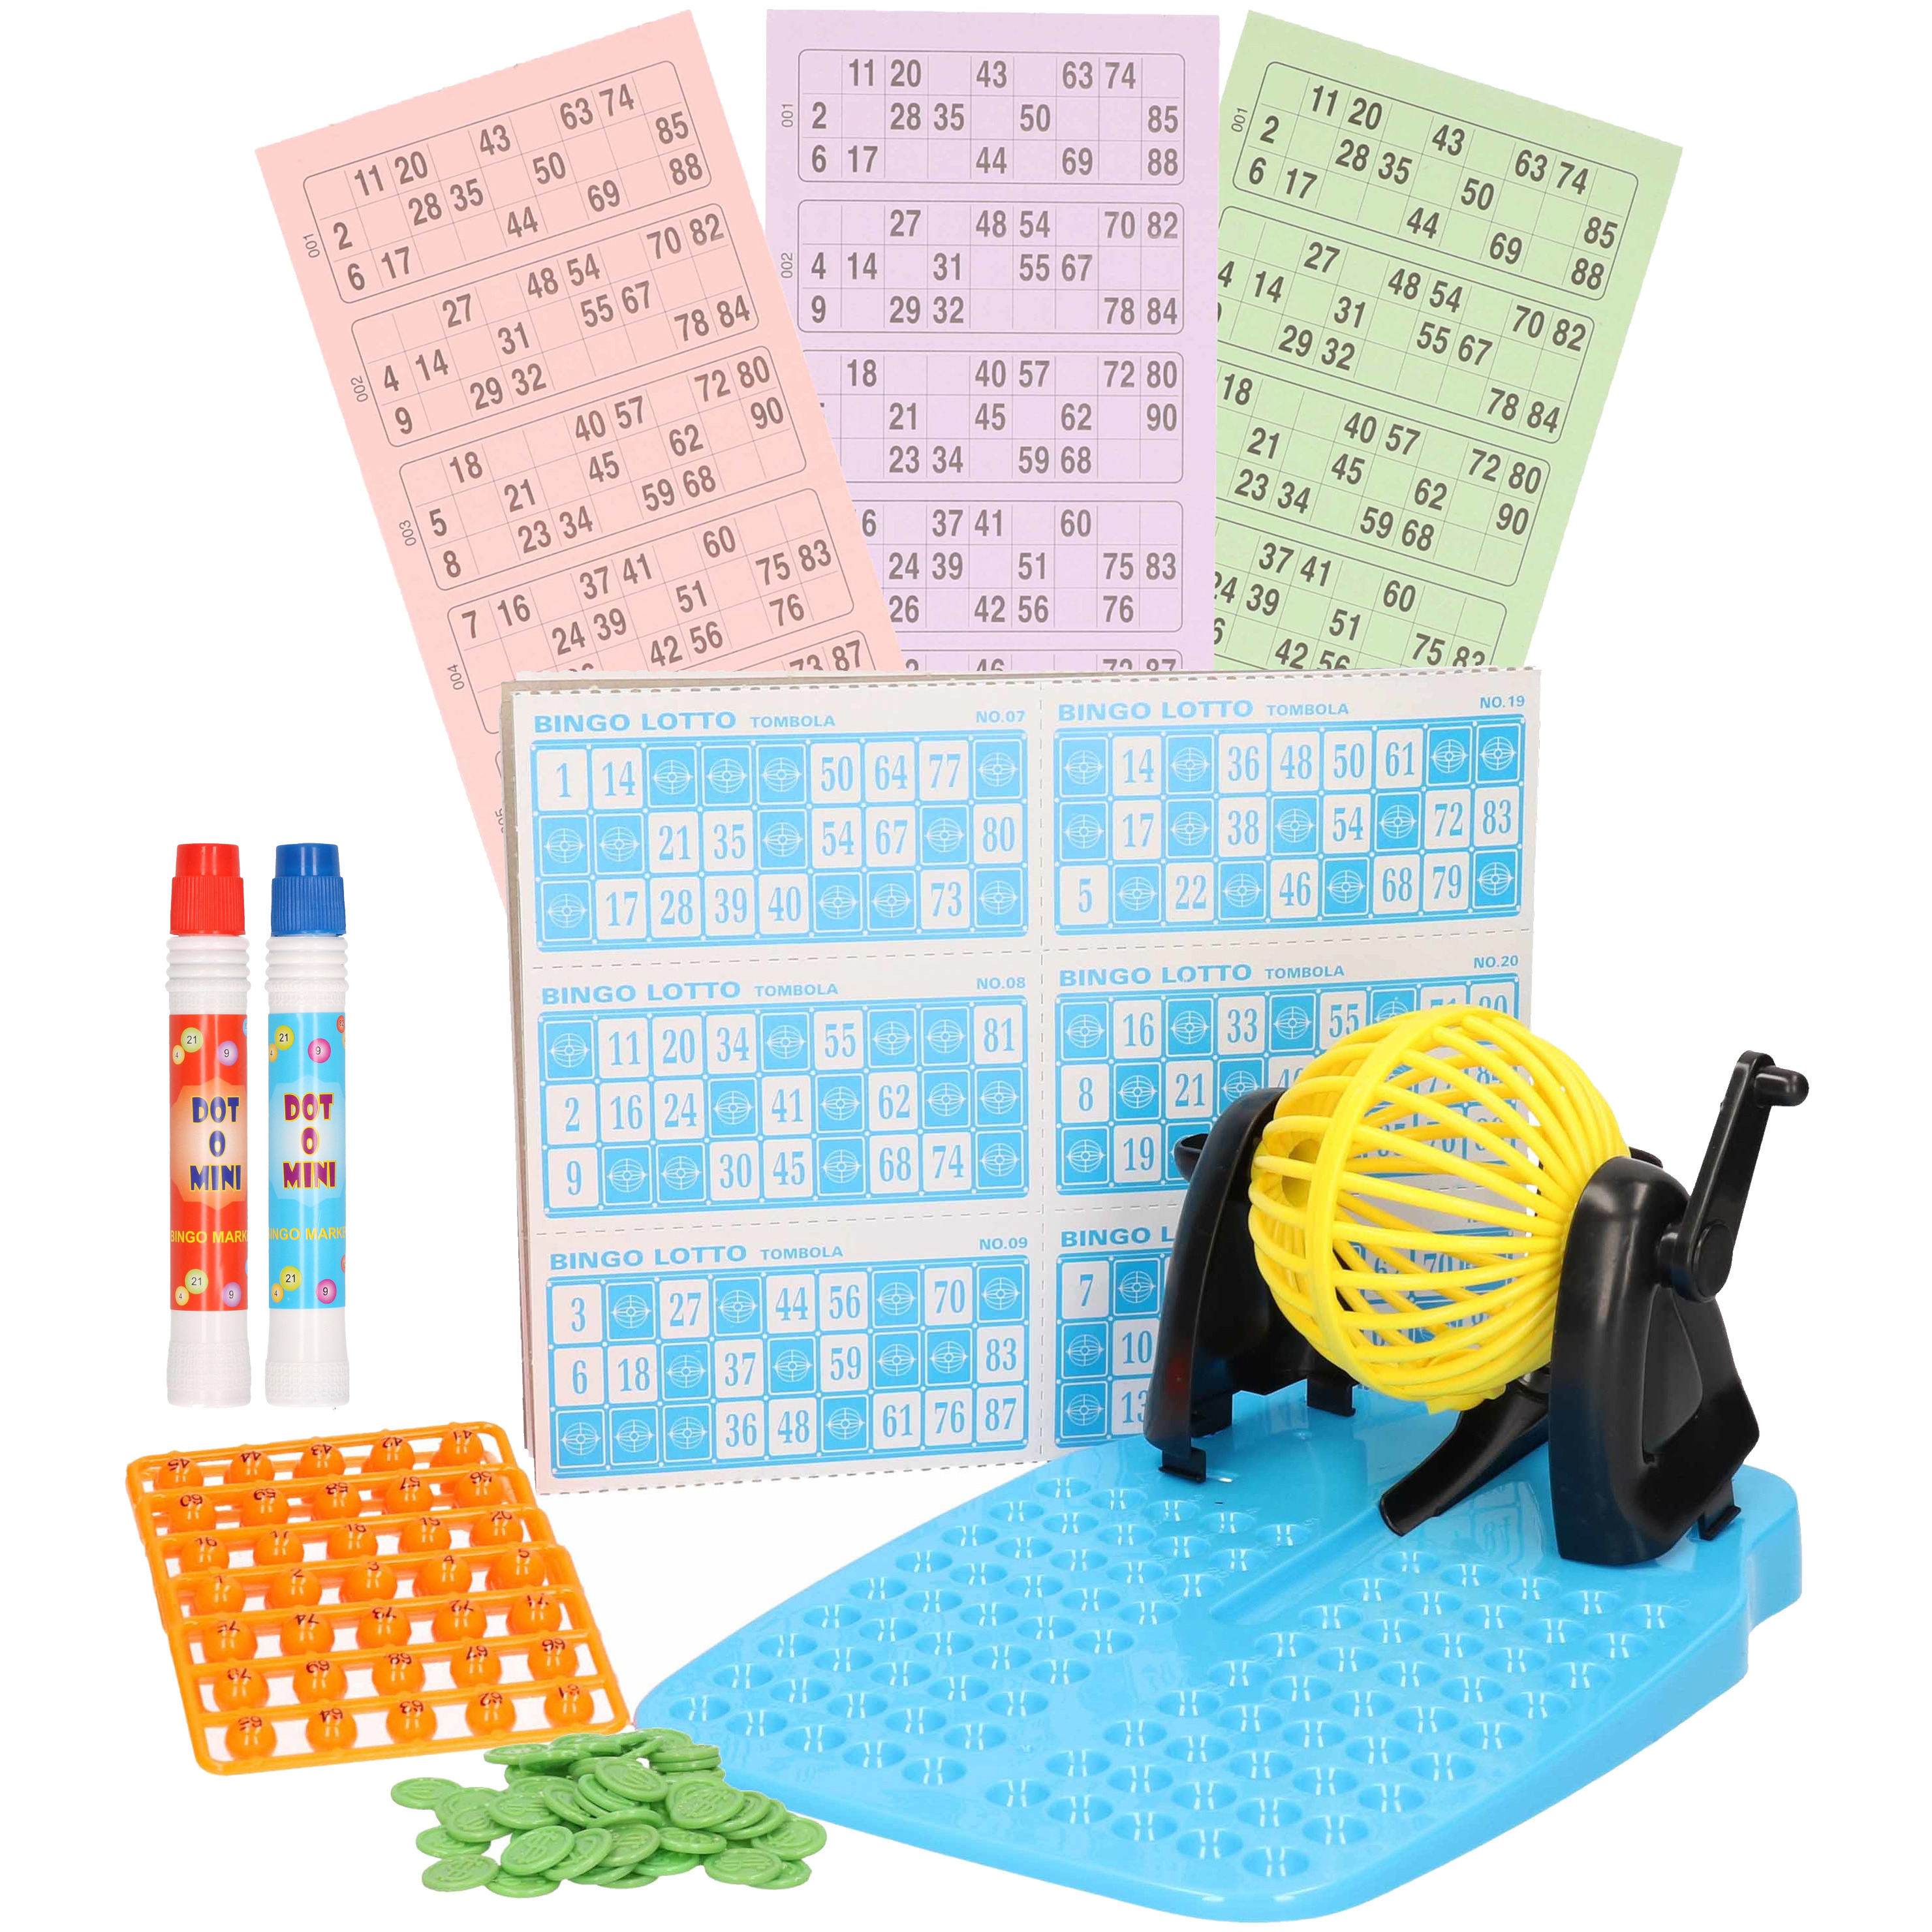 Bingo spel gekleurd/geel complete set nummers 1-90 met molen/148x bingokaarten/2x stiften